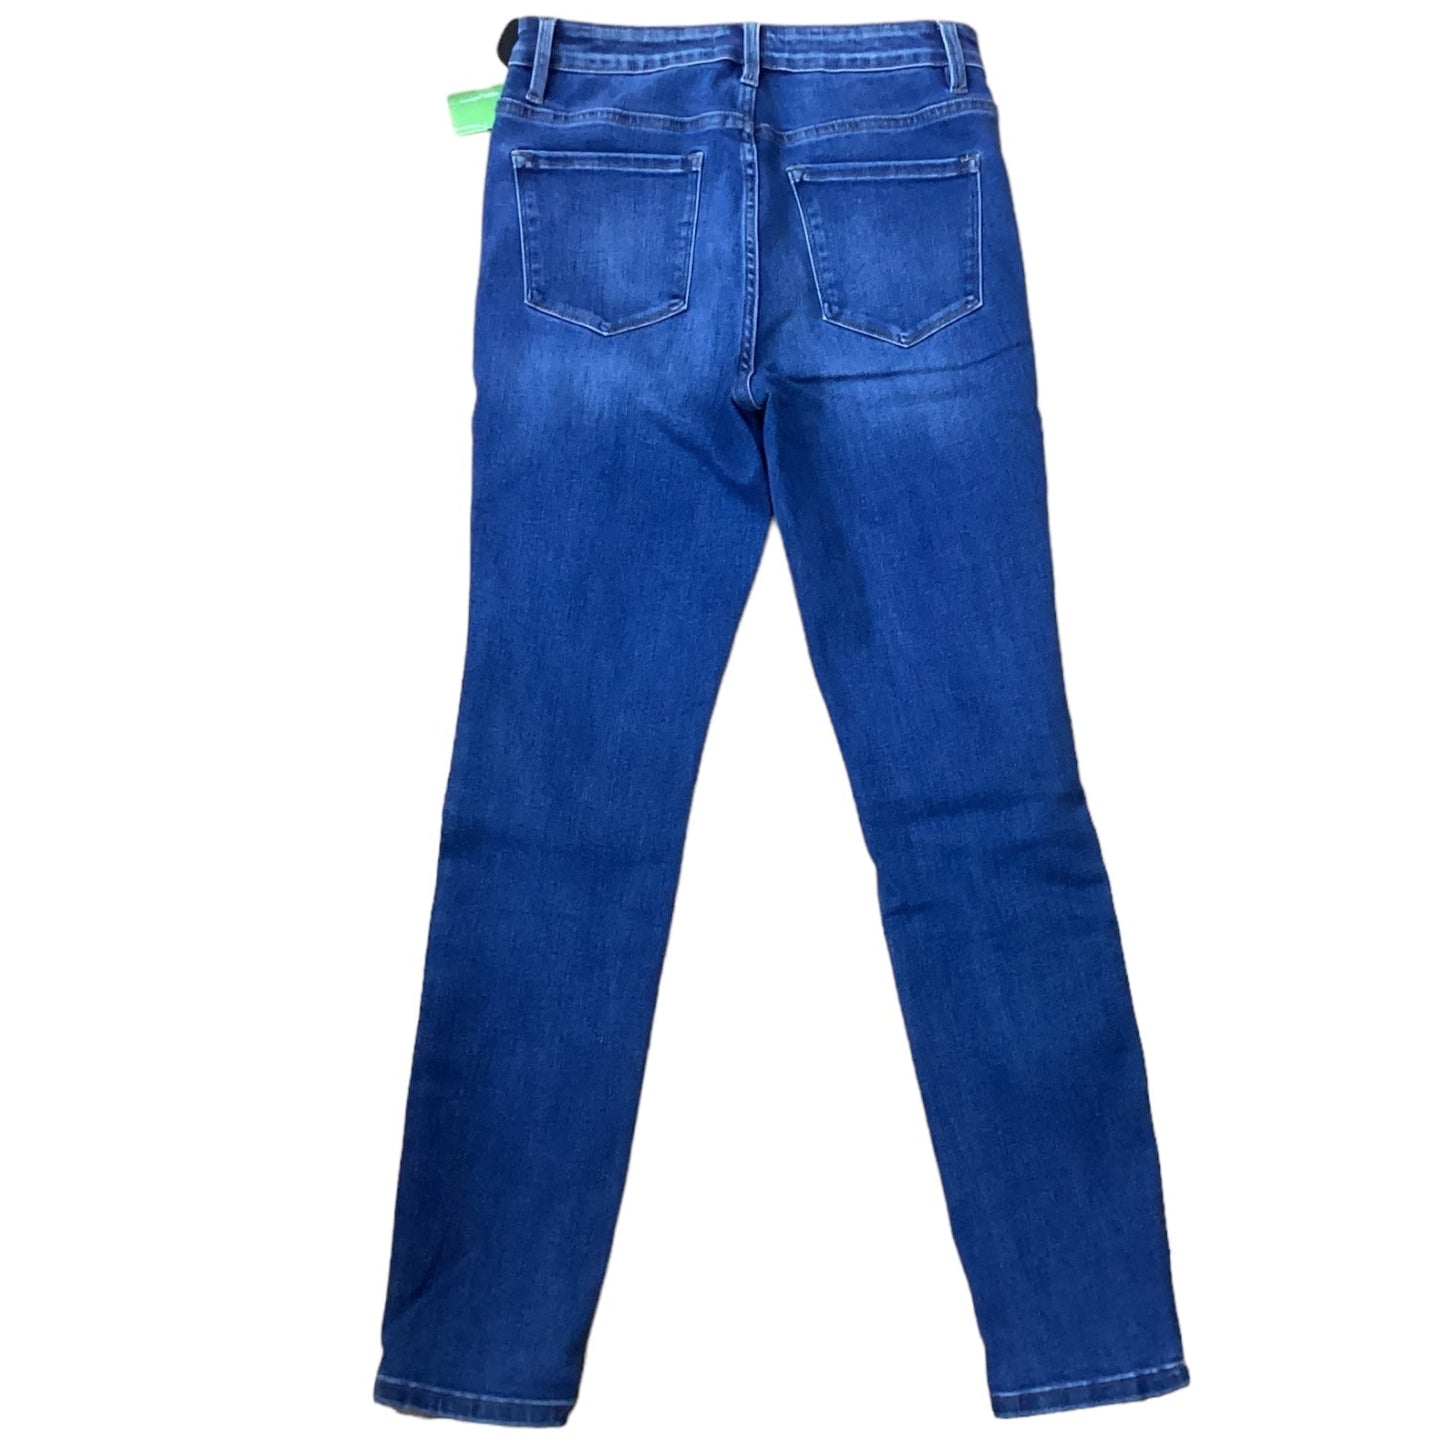 Jeans Designer By Vervet  Size: 6